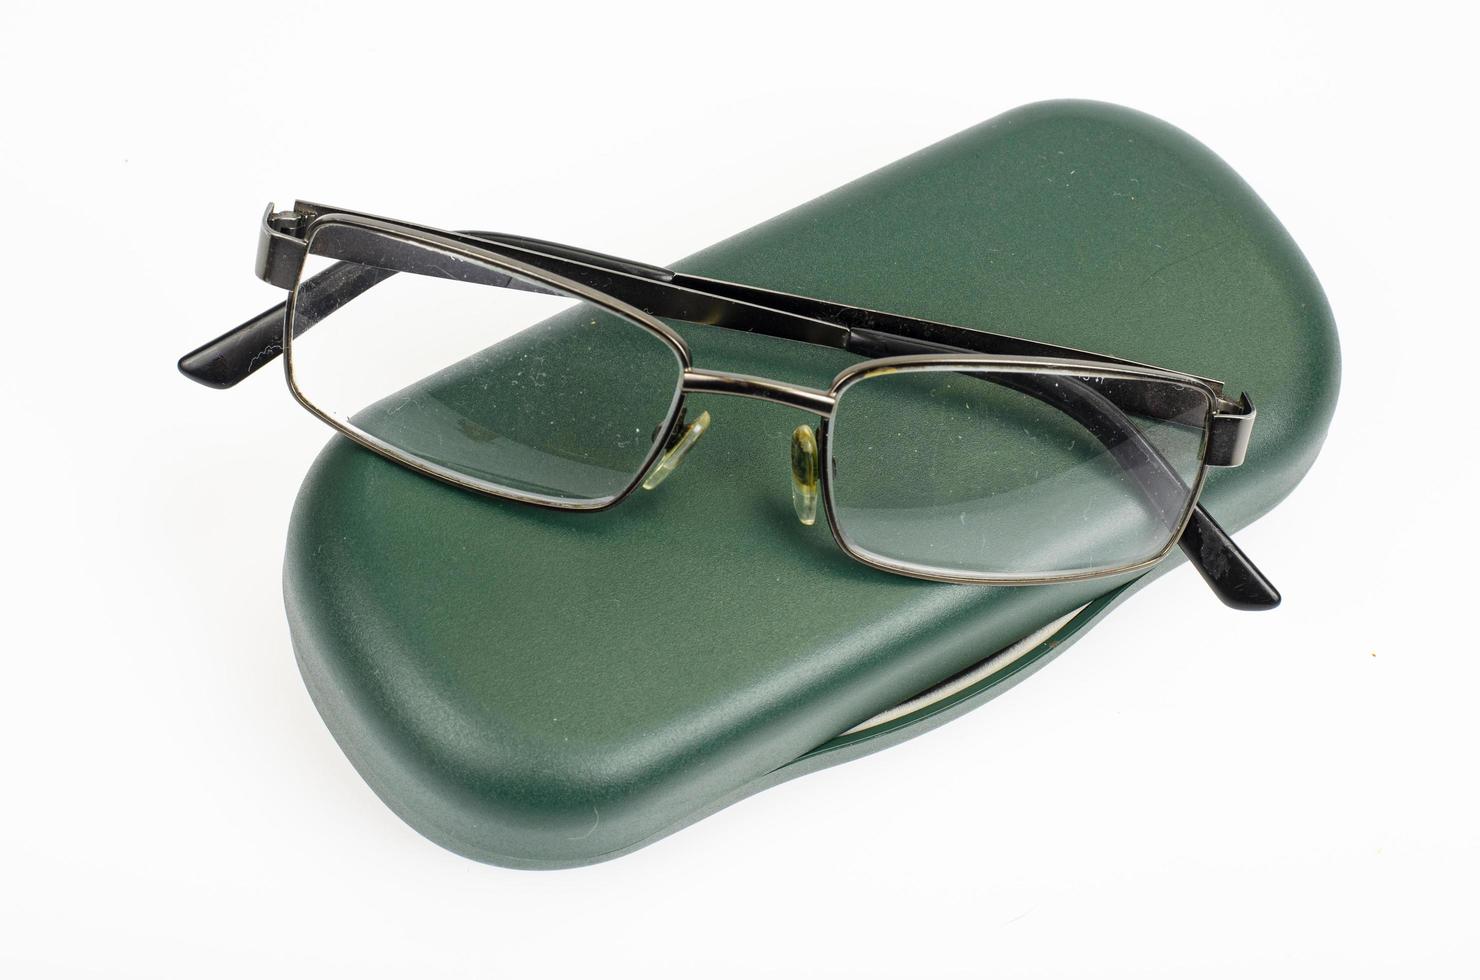 óculos, aparelhos de lupa para leitura. foto de estúdio